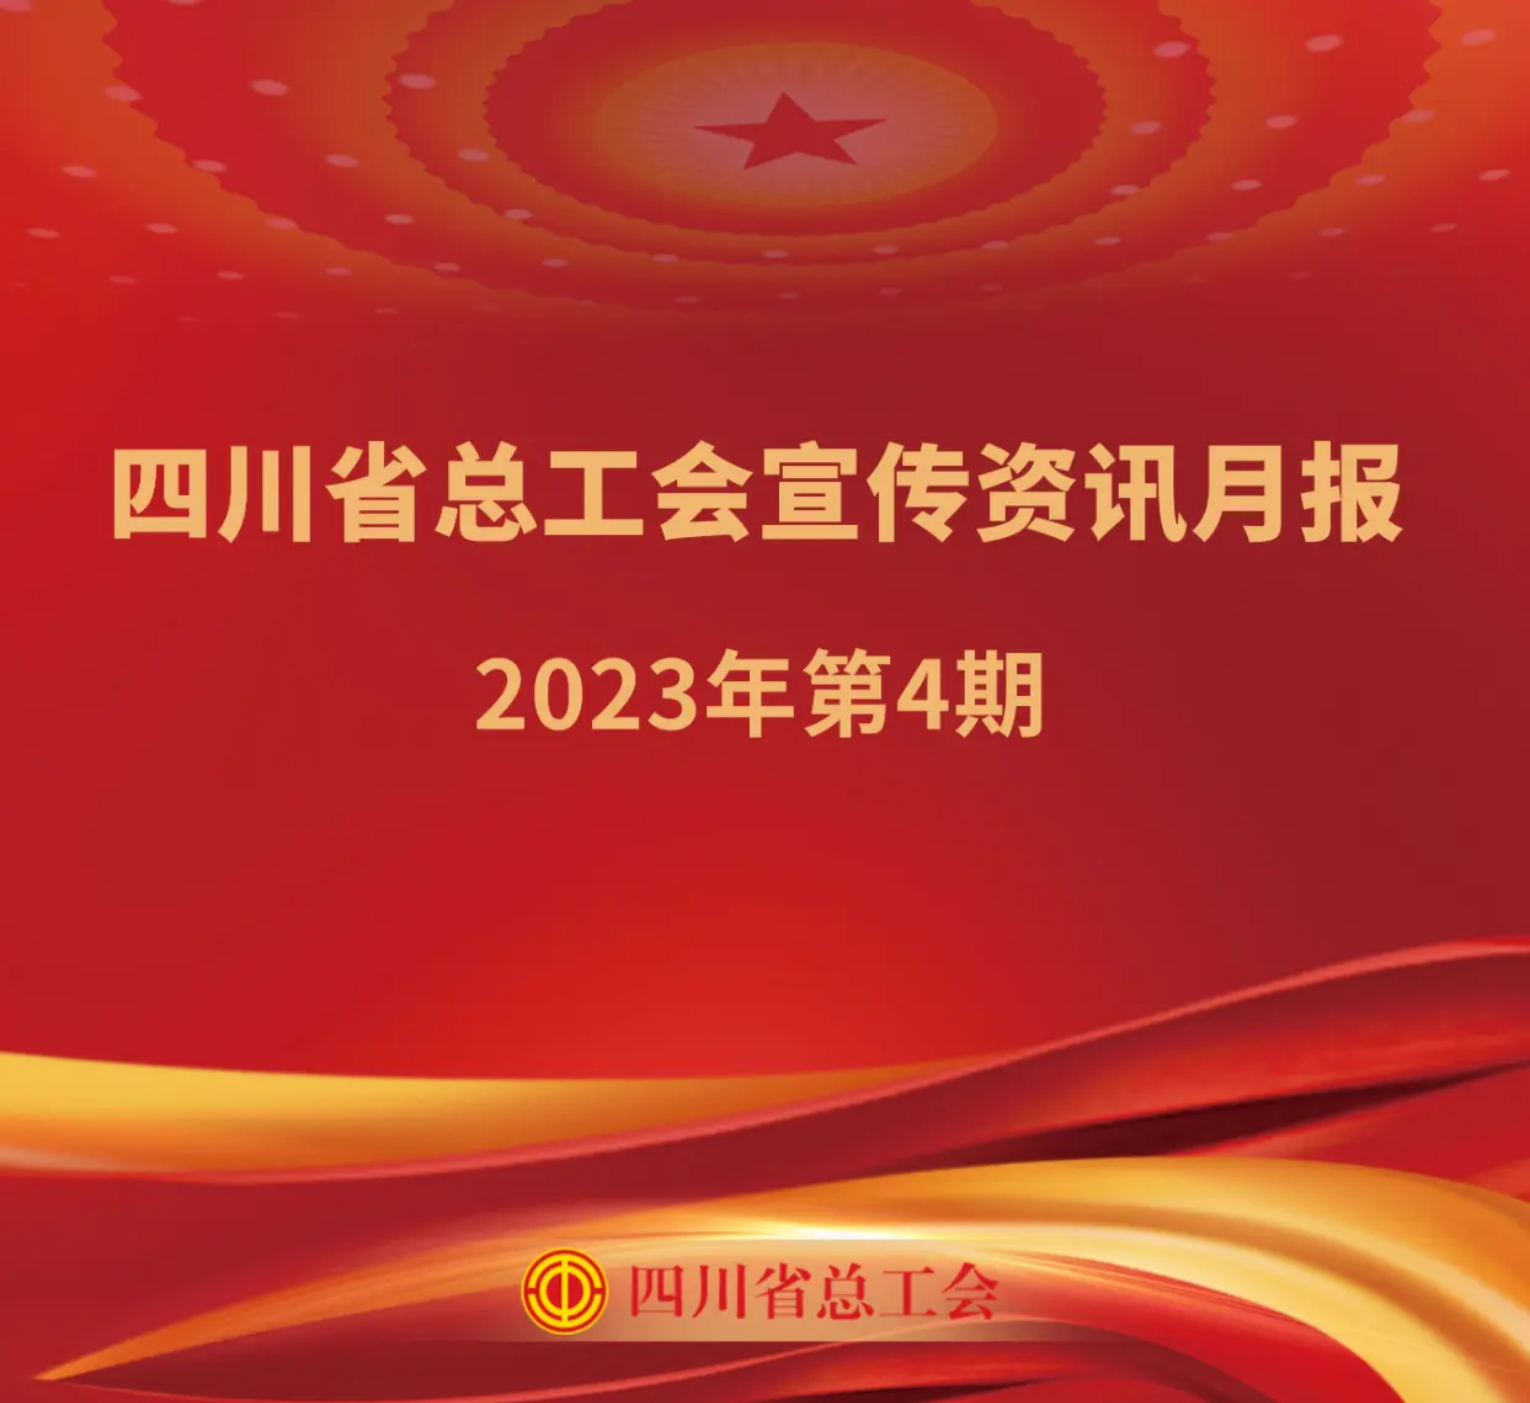 四川省总工会宣传资讯月报2023年第4期_装订本